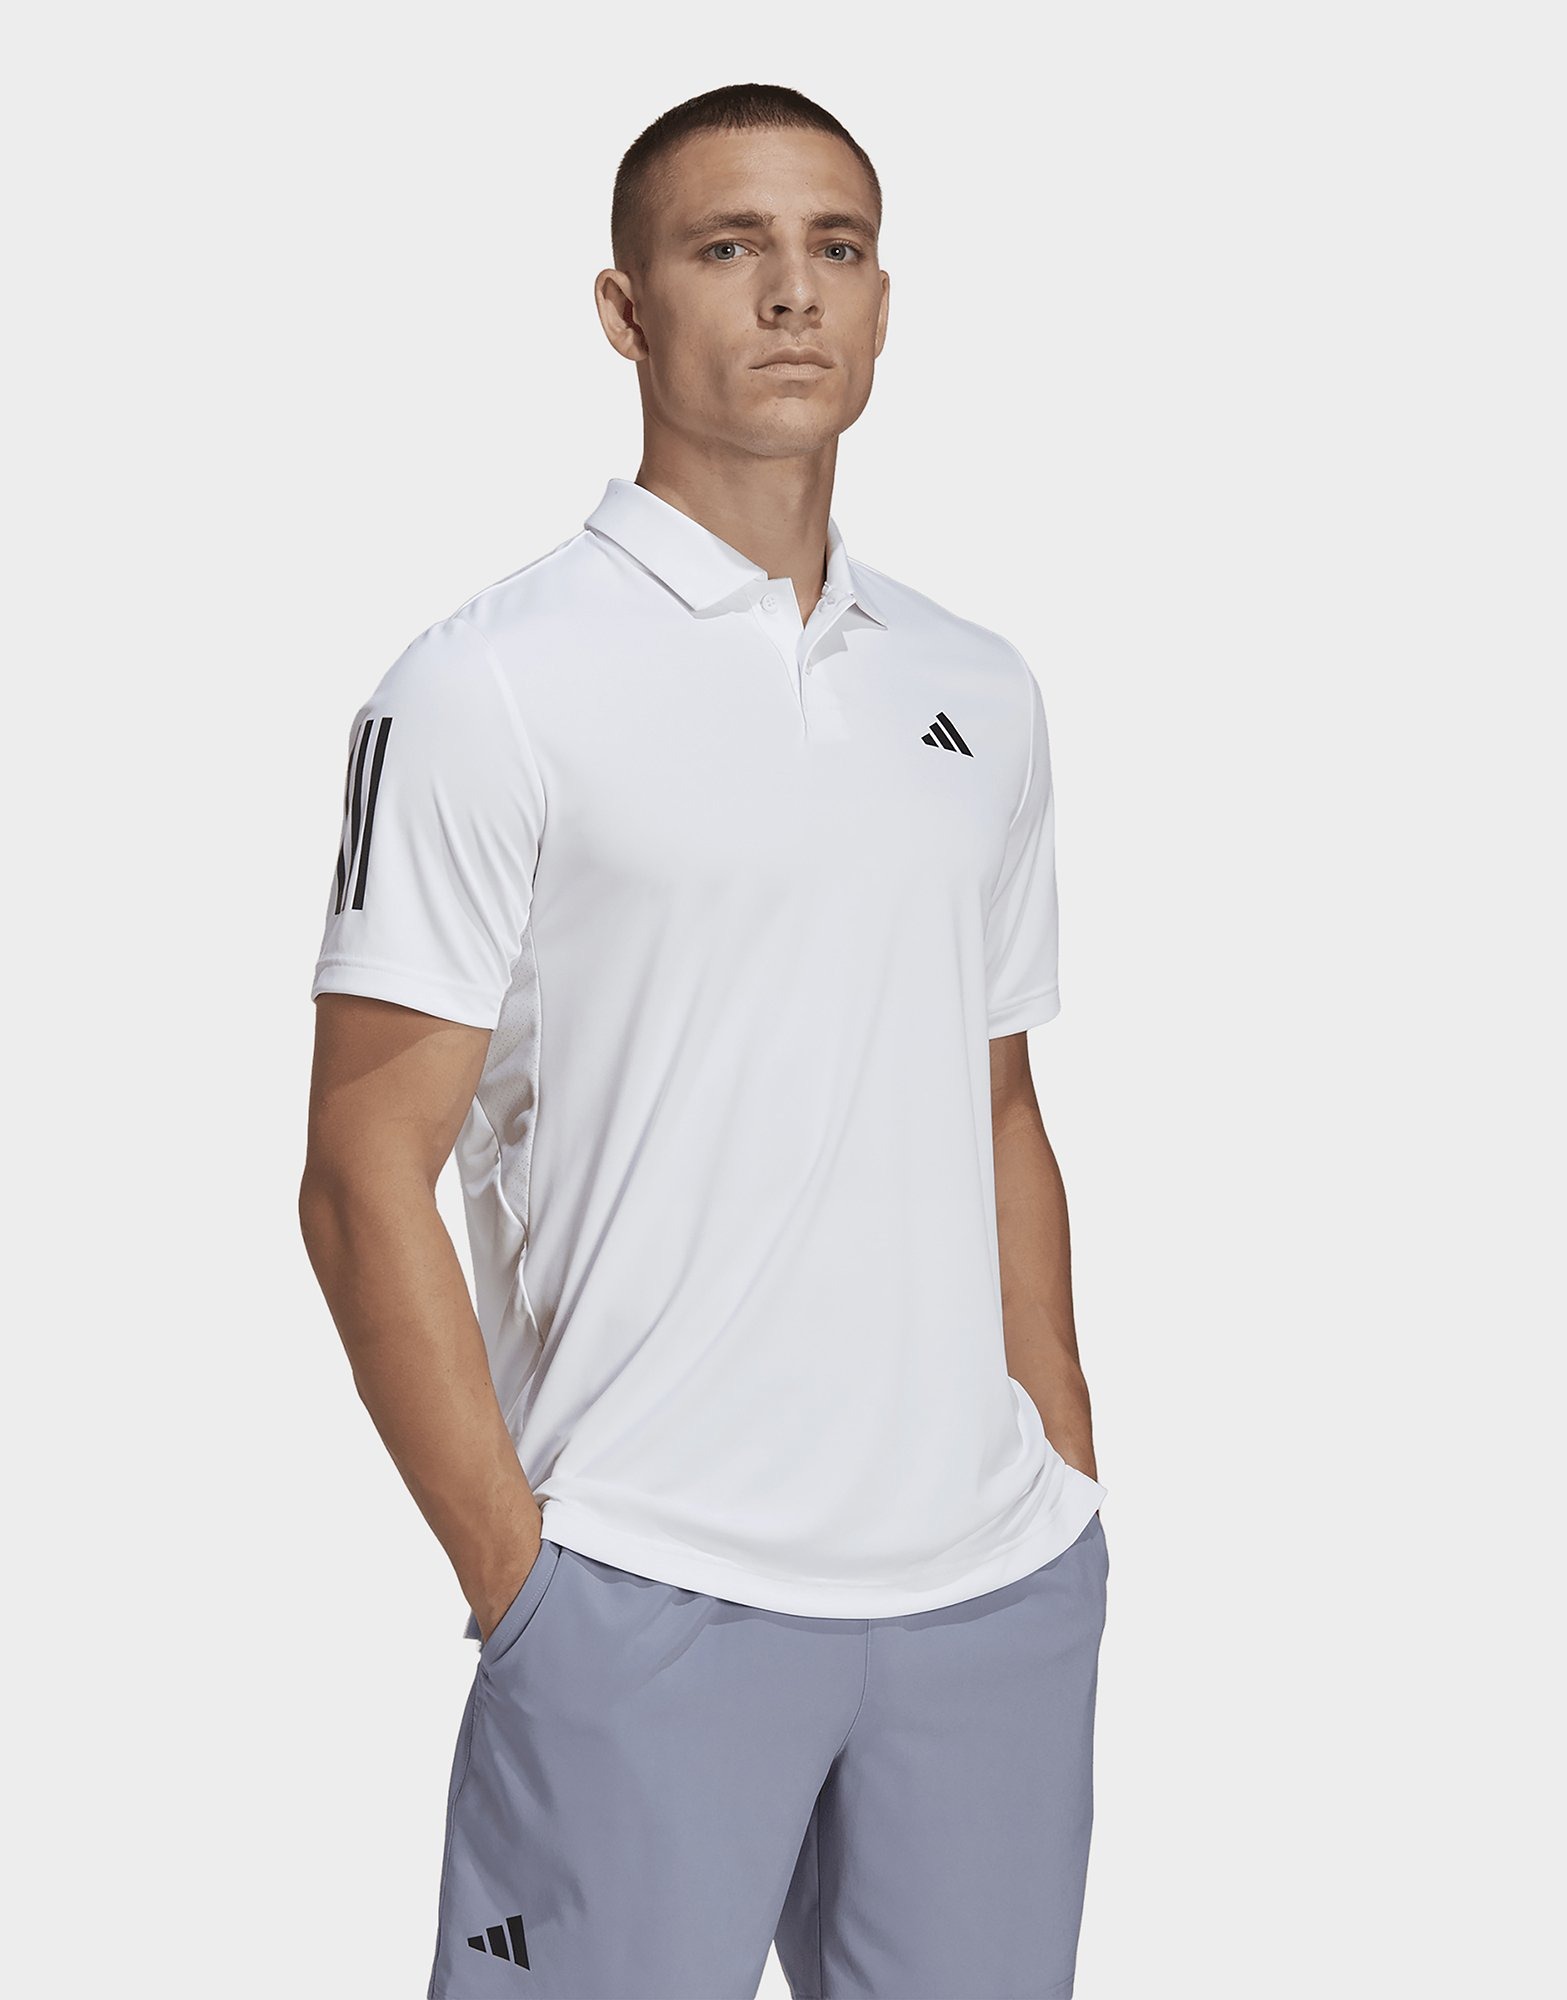 inaktive syv Tochi træ White adidas Club 3-Stripes Tennis Polo Shirt | JD Sports UK